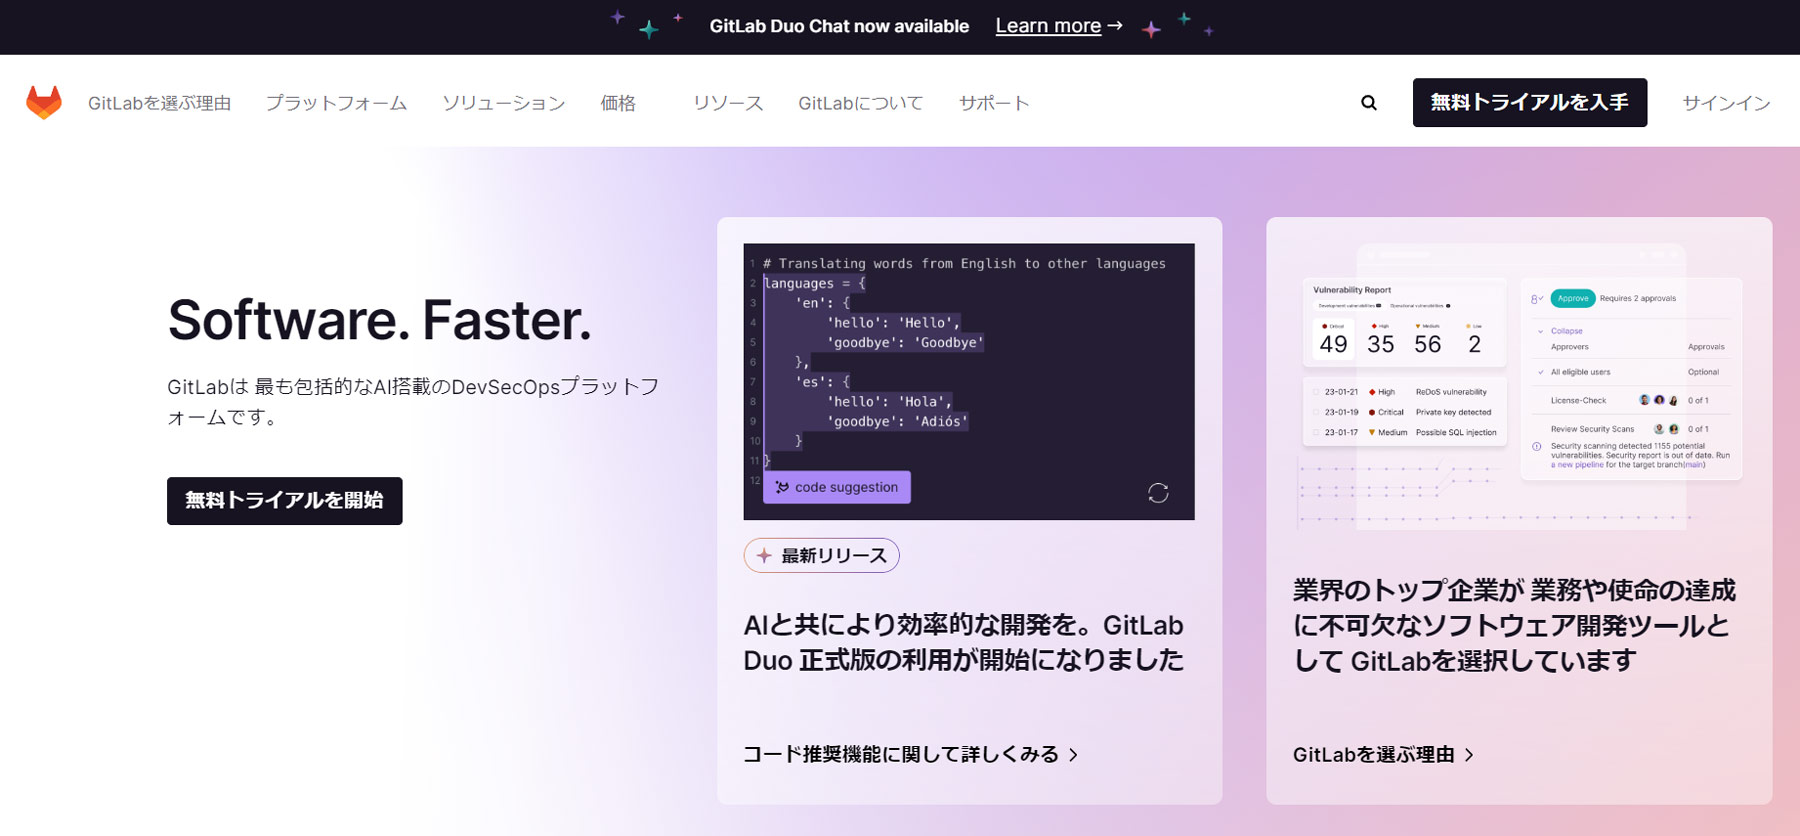 GitLab公式Webサイト